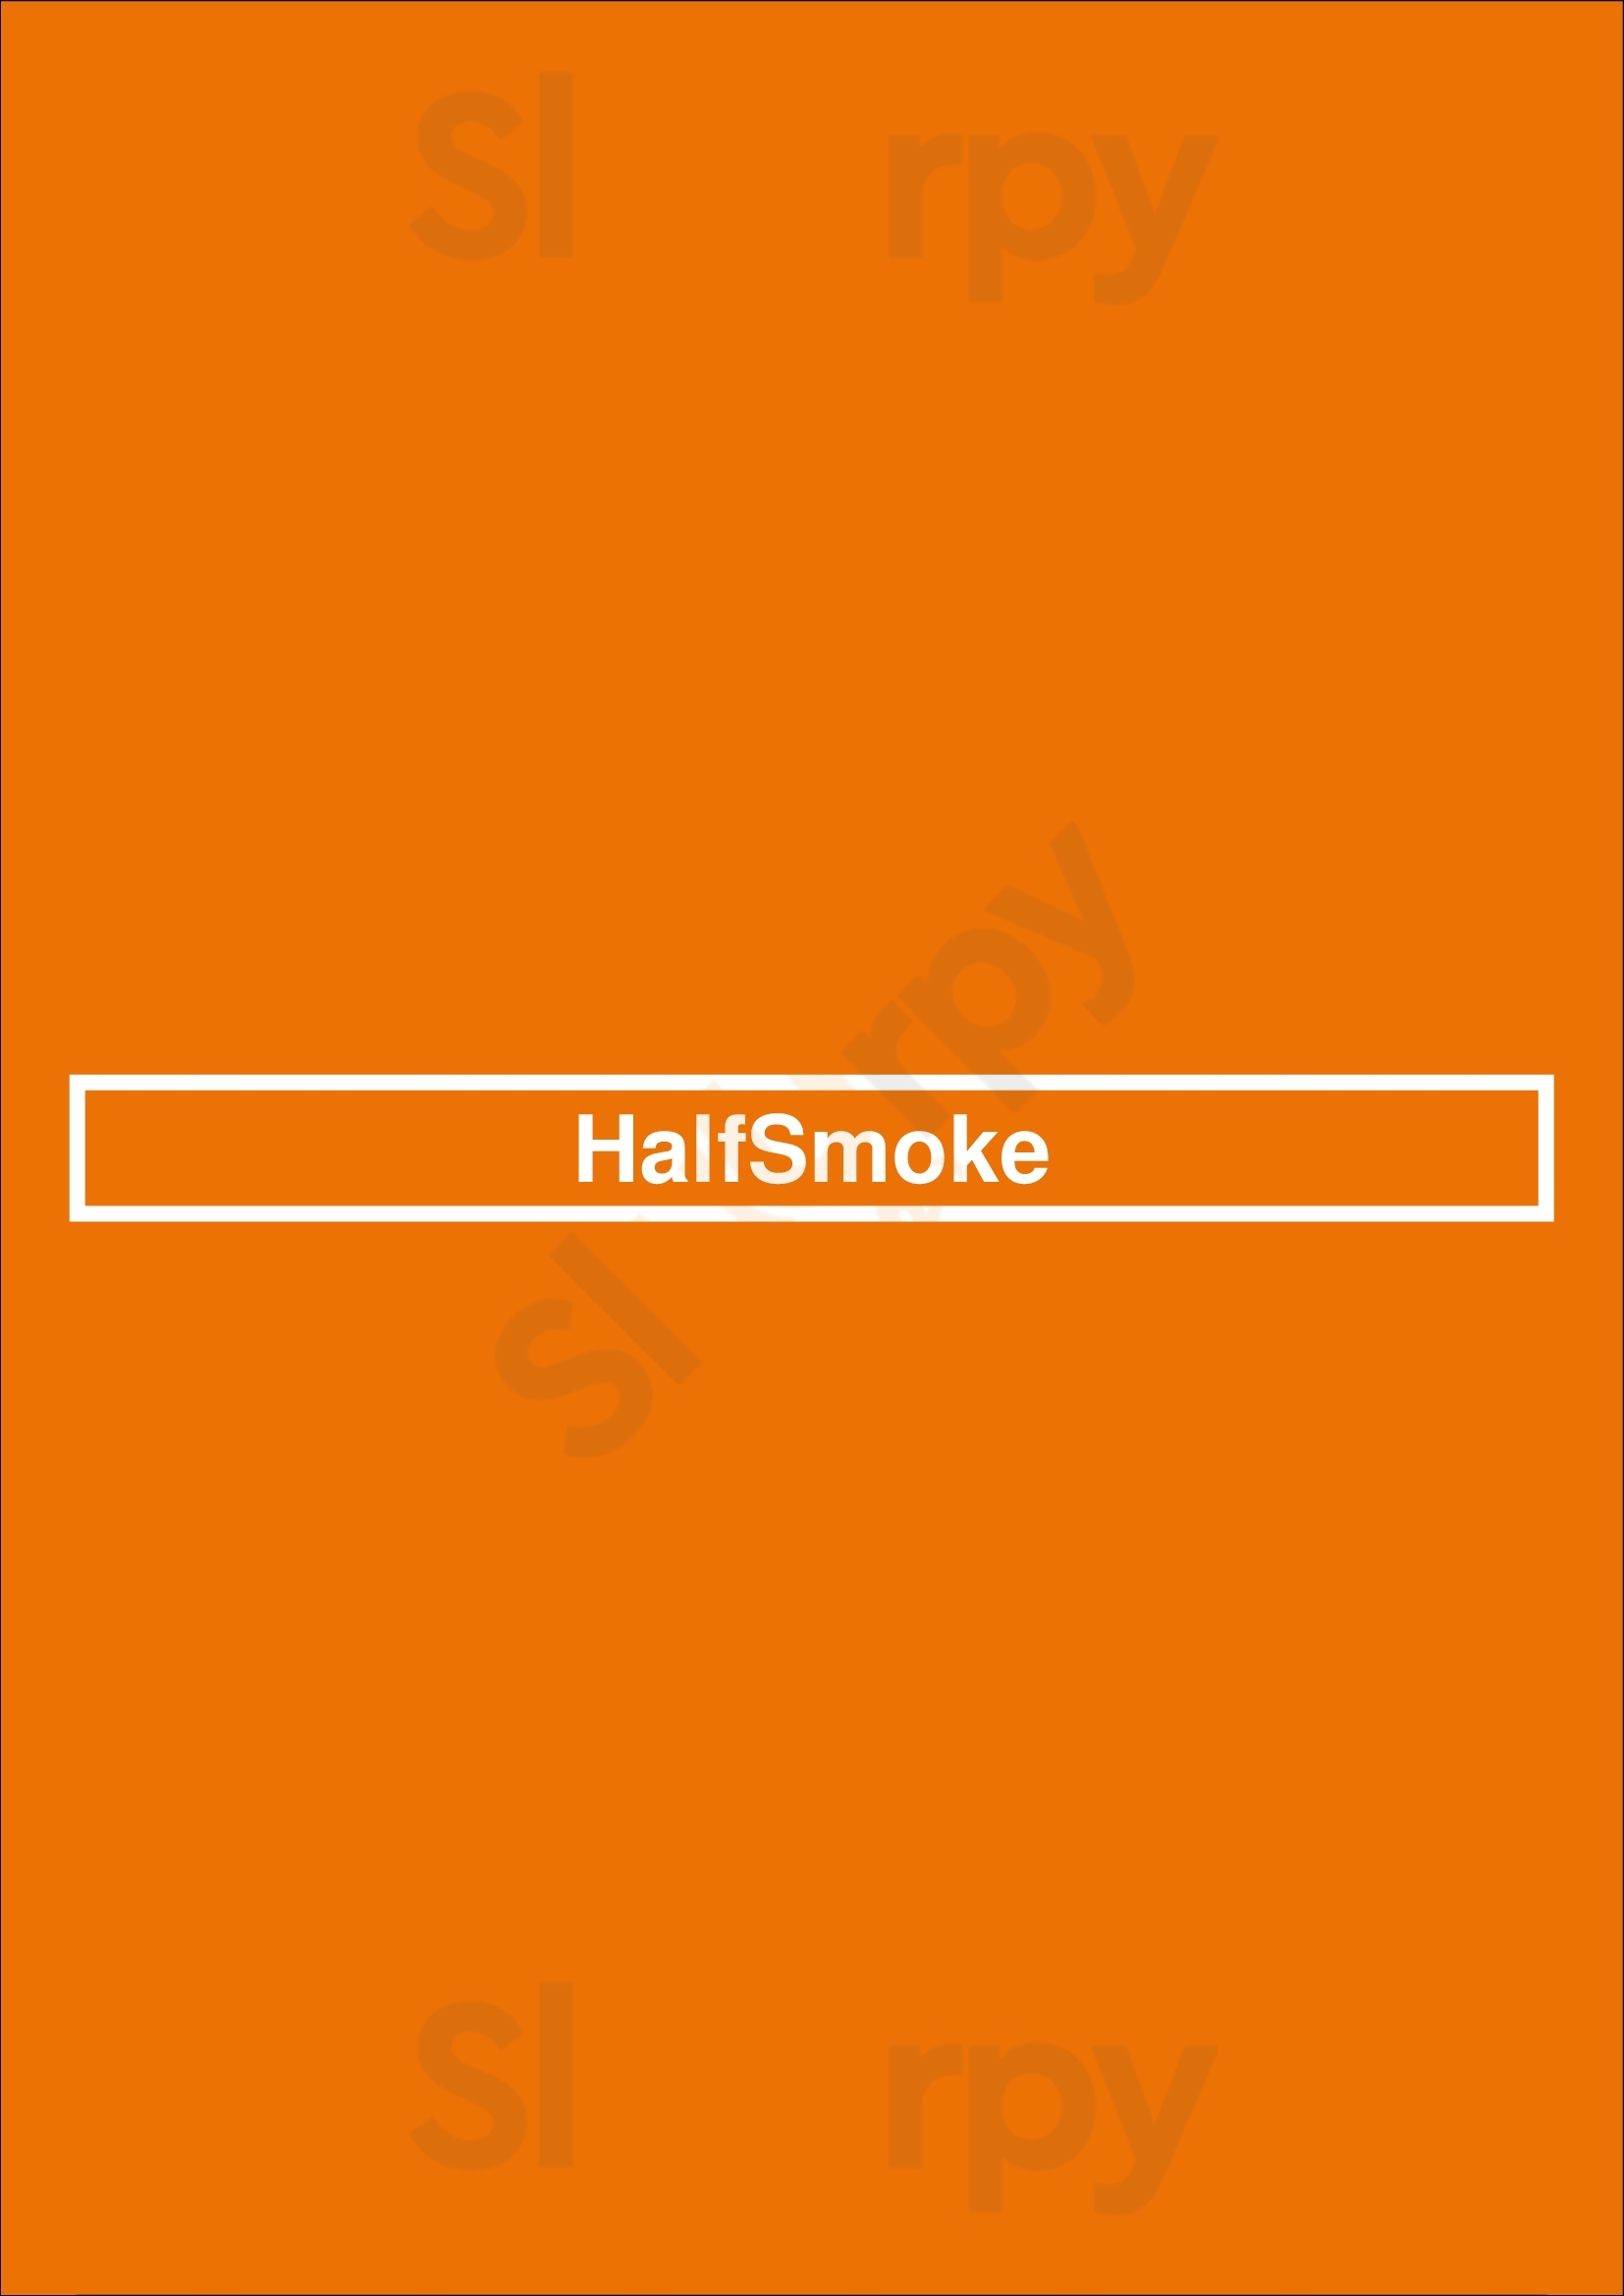 Halfsmoke Washington DC Menu - 1